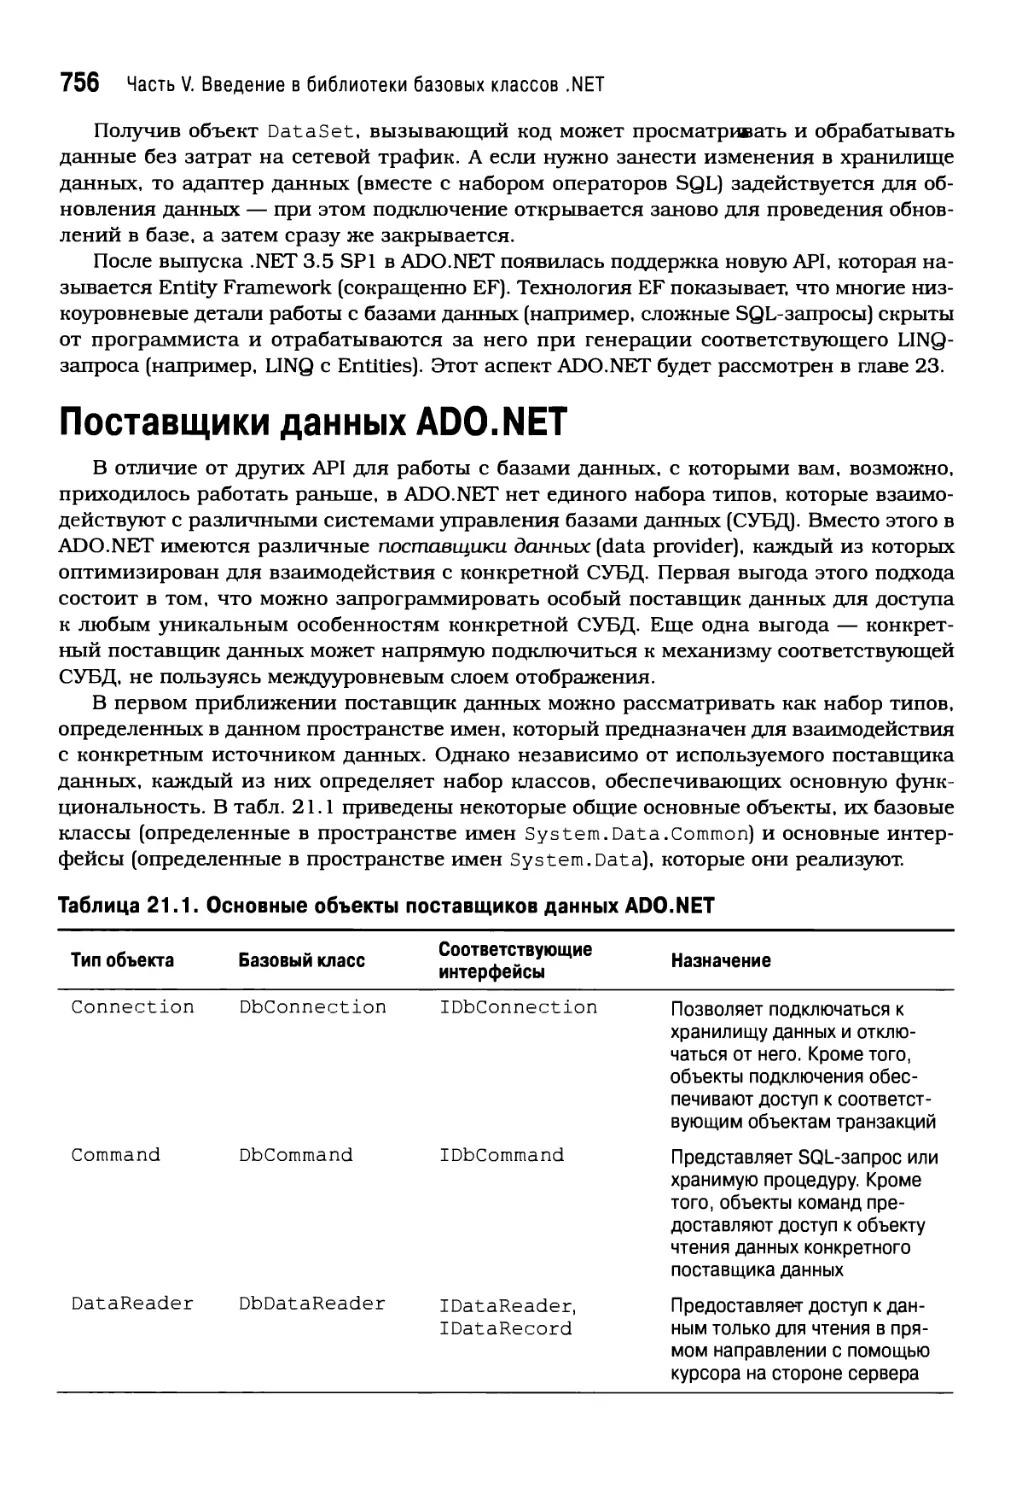 Поставщики данных ADO.NET